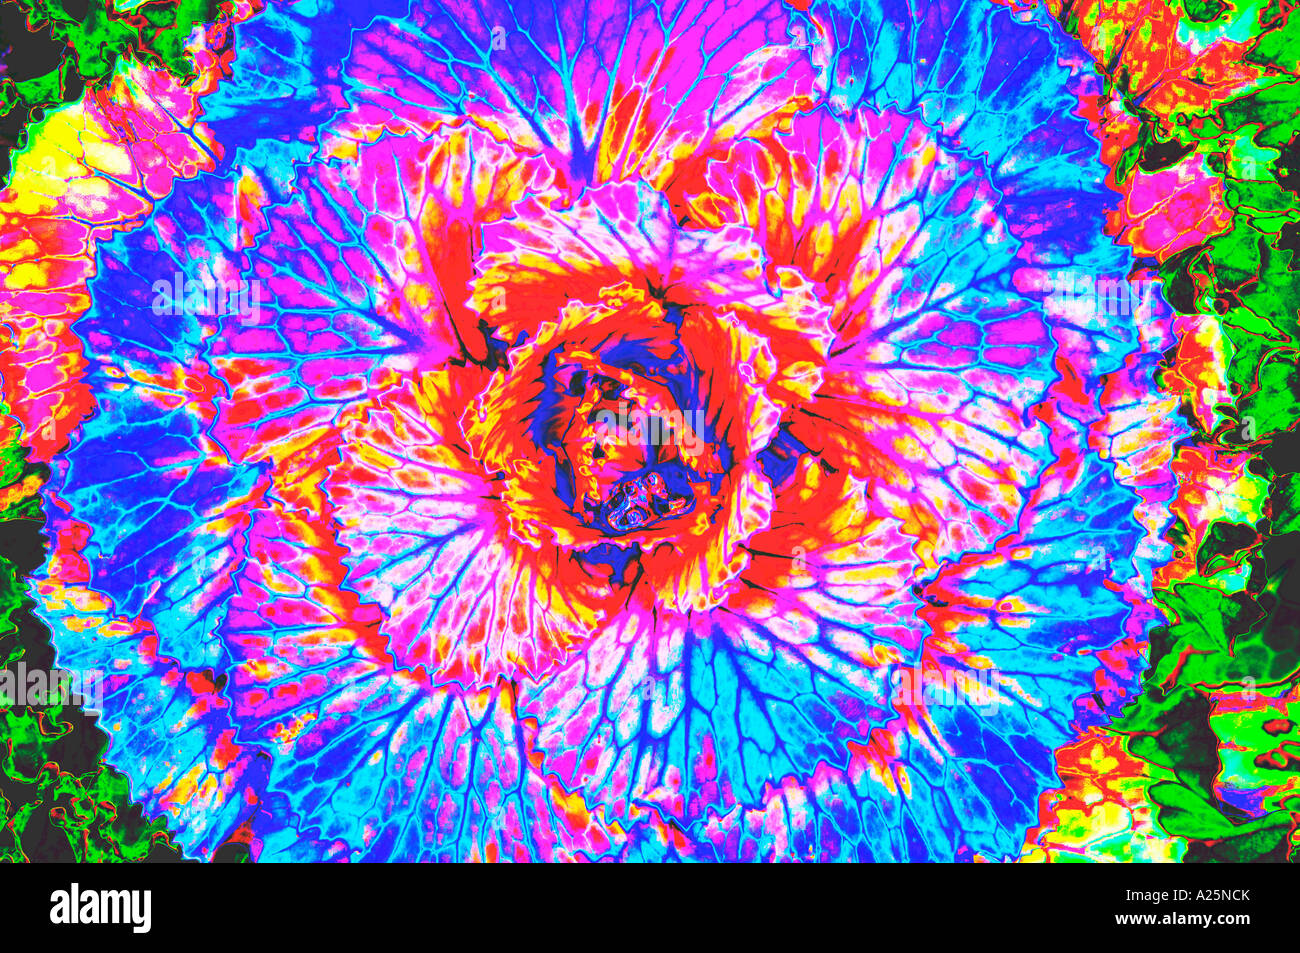 Kohl Blume künstlerische Abbildung Grafikfilter Spezialeffekt Konzept Natur recht abstrakt verschiedene Detail hautnah Stockfoto